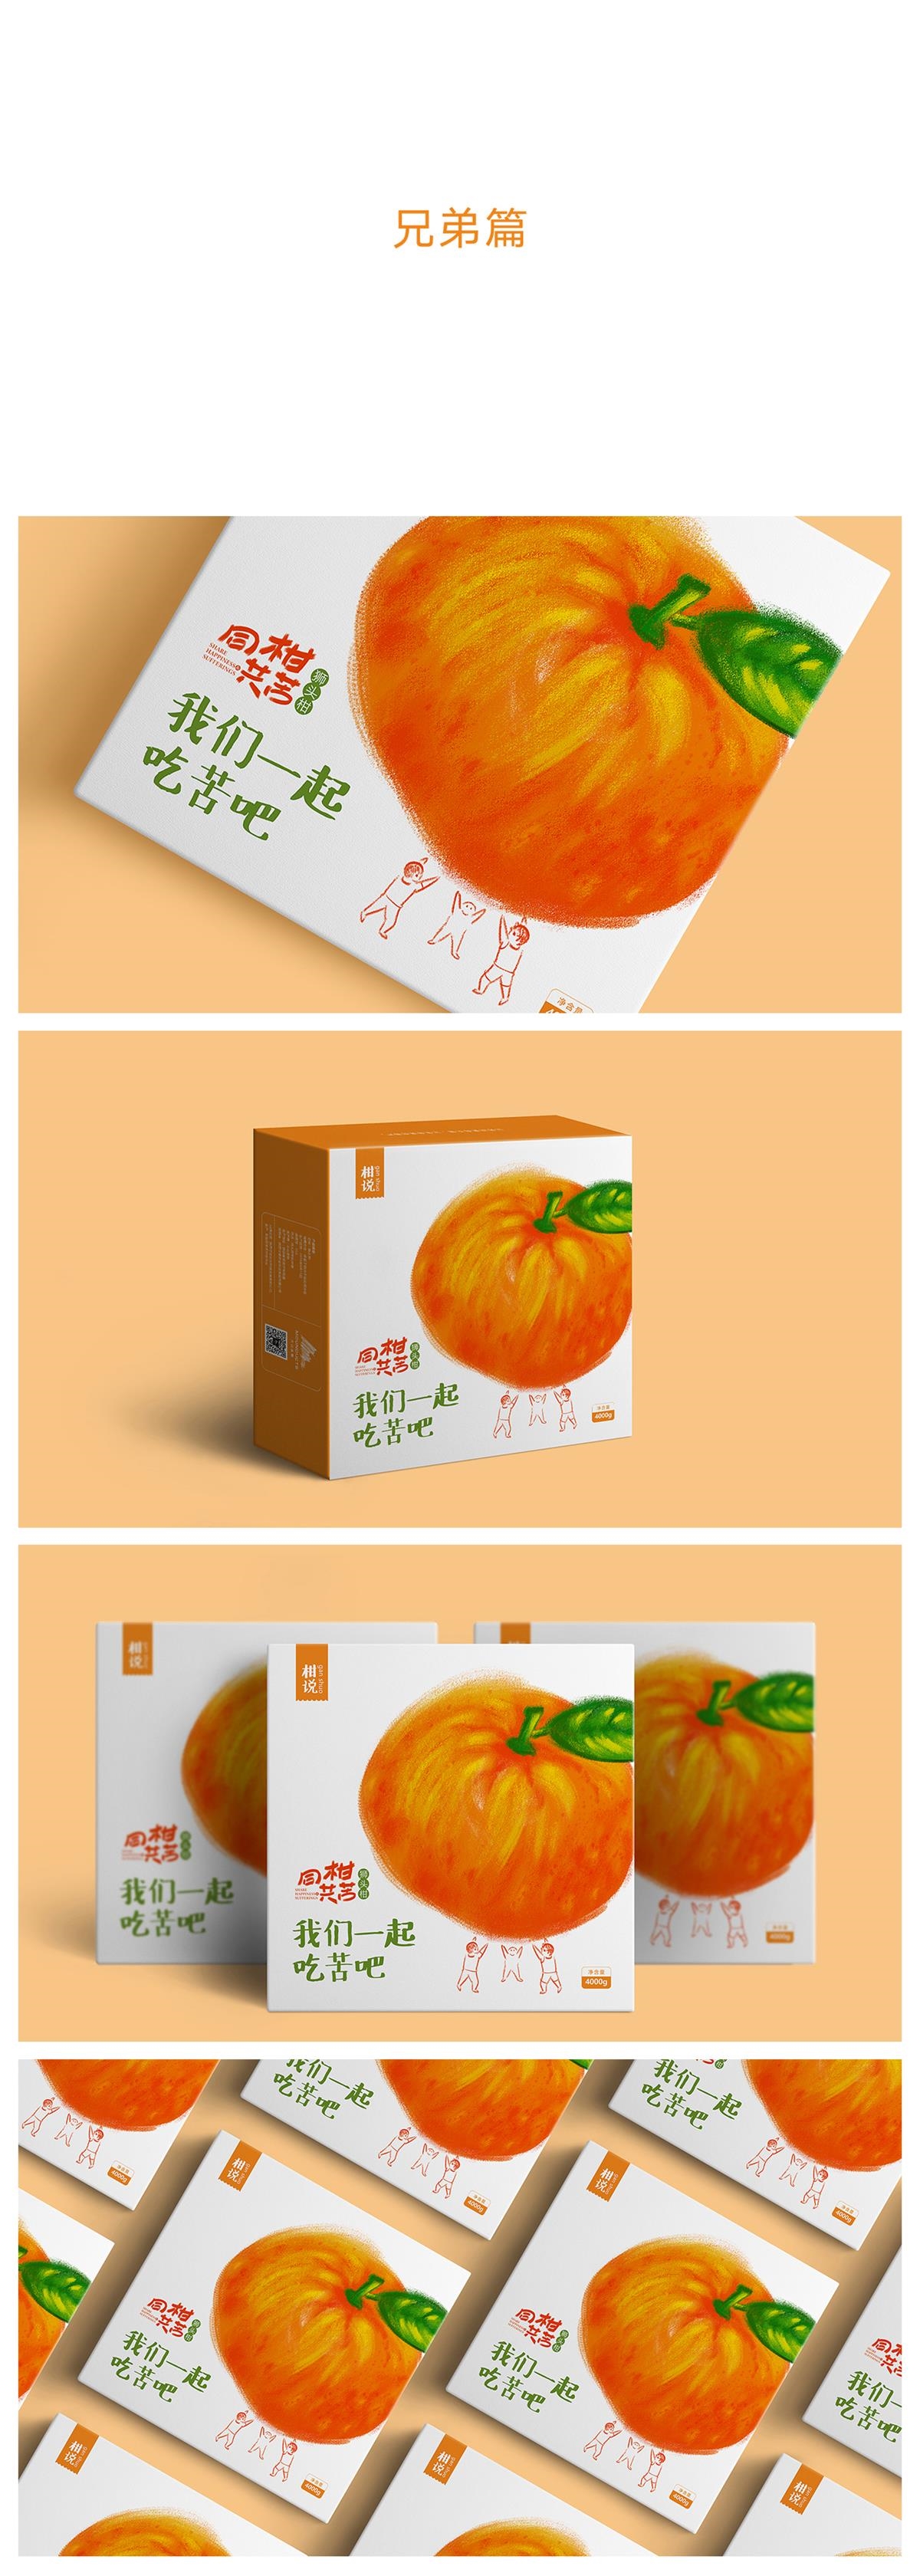 狮头柑-农产品特产 包装设计 X 张晓宁